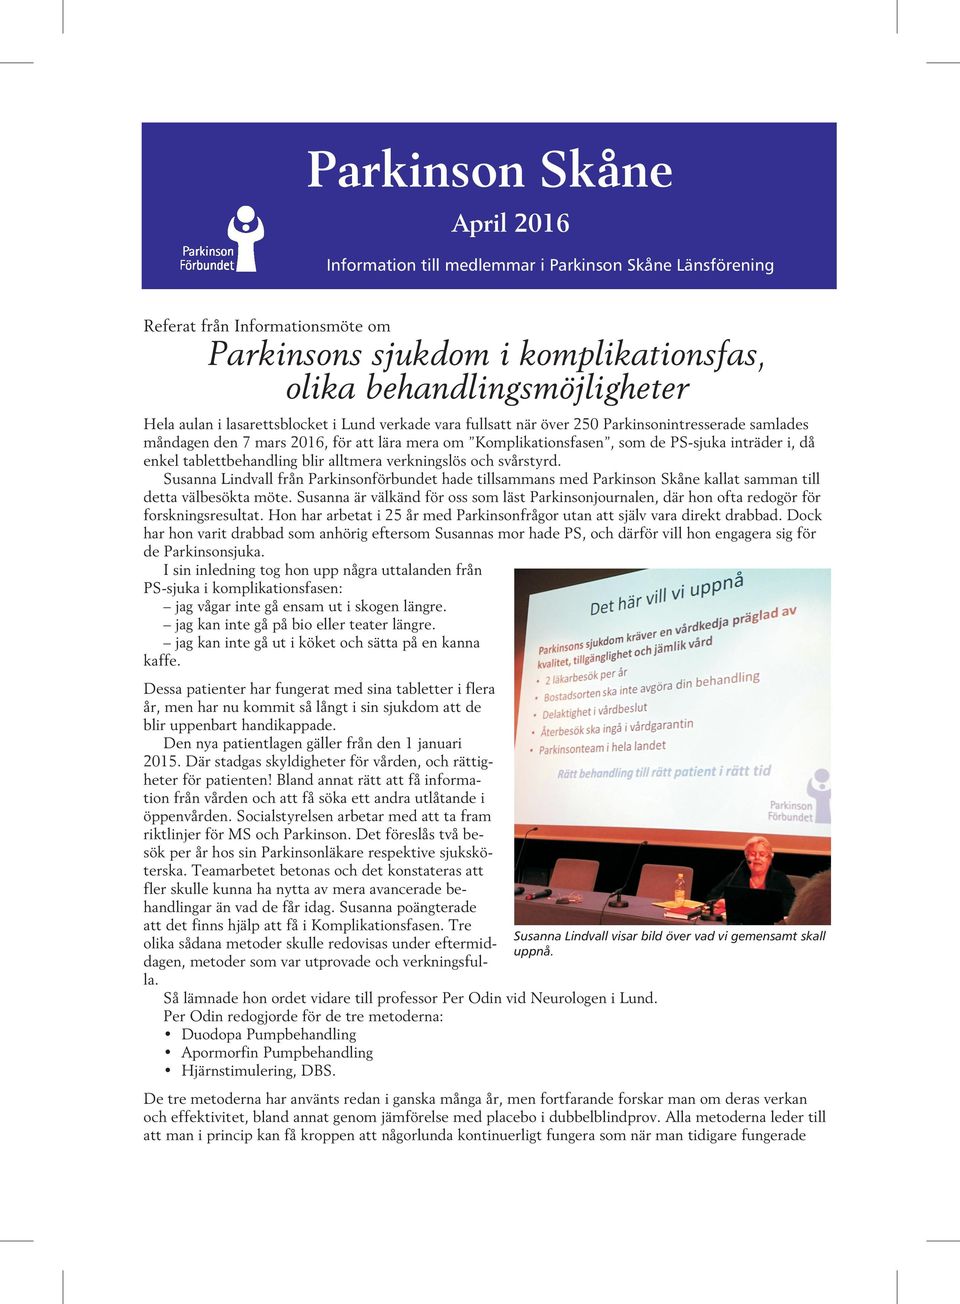 tablettbehandling blir alltmera verkningslös och svårstyrd. Susanna Lindvall från Parkinsonförbundet hade tillsammans med Parkinson Skåne kallat samman till detta välbesökta möte.